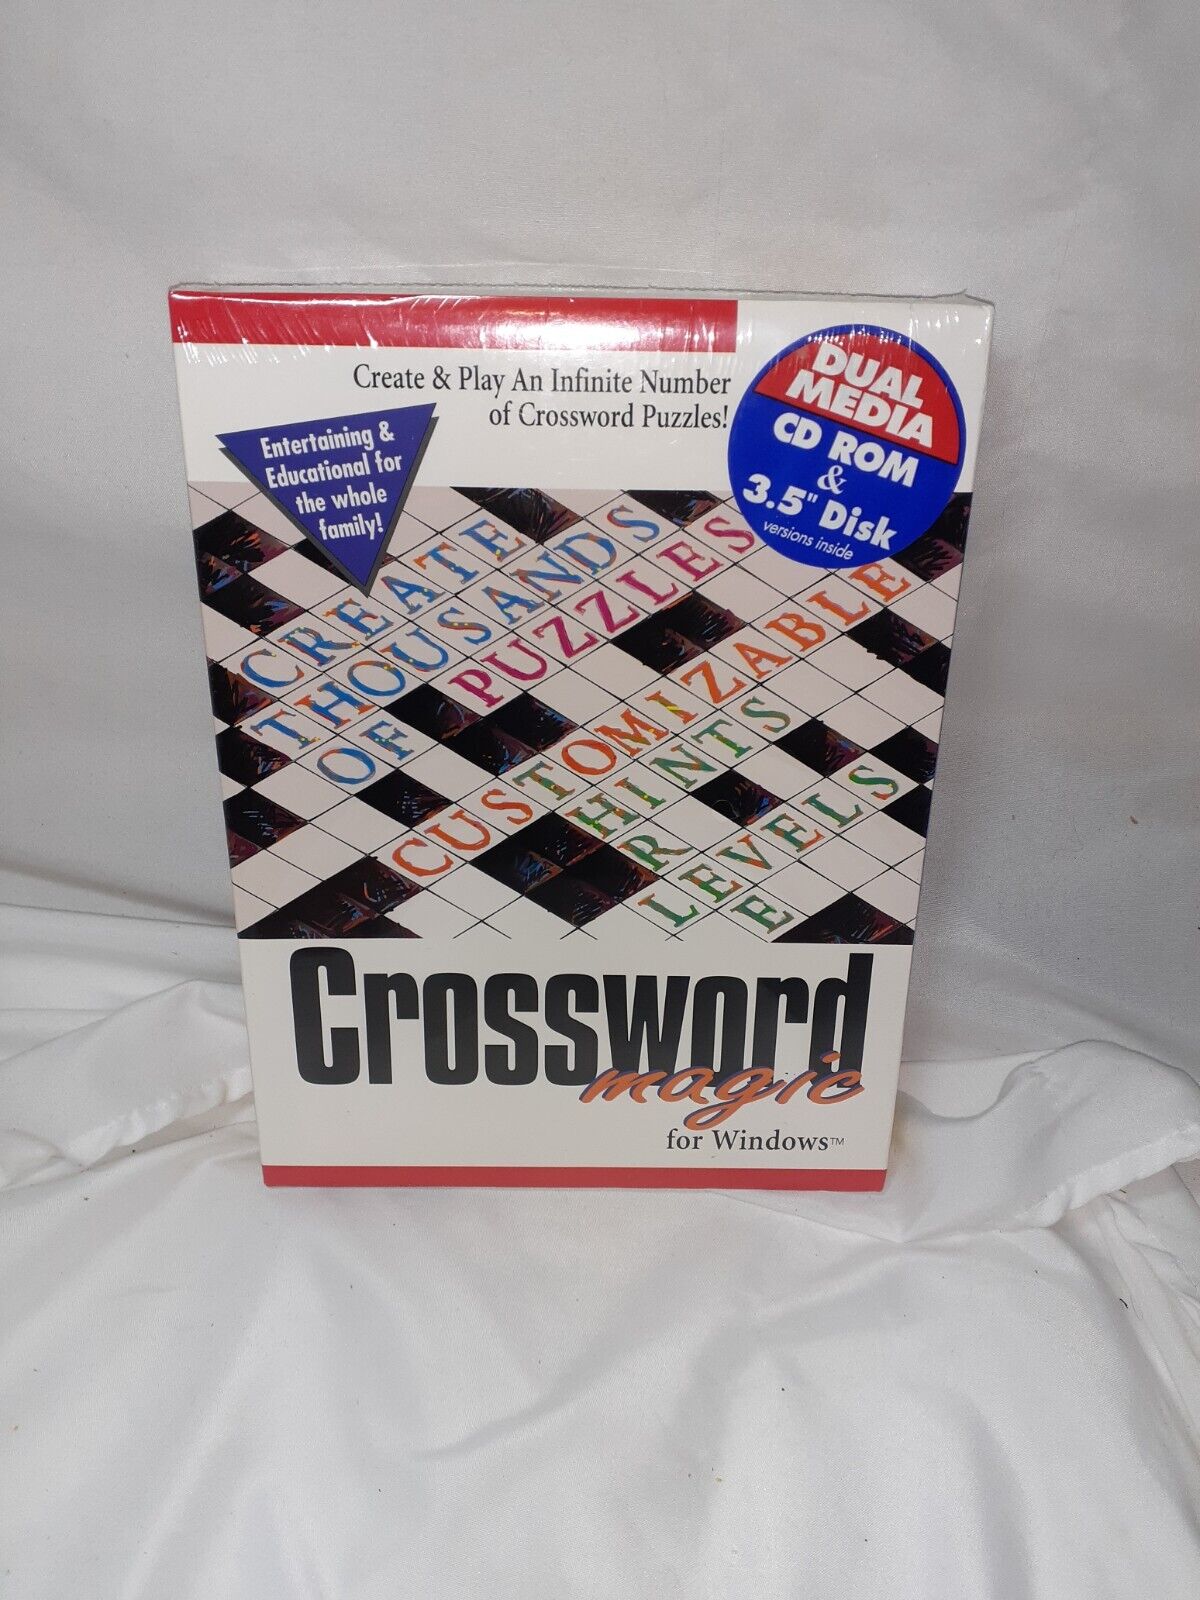 Crossword magic For Windows Platinum Cosmi Jewel PC CD Rom 3.5\